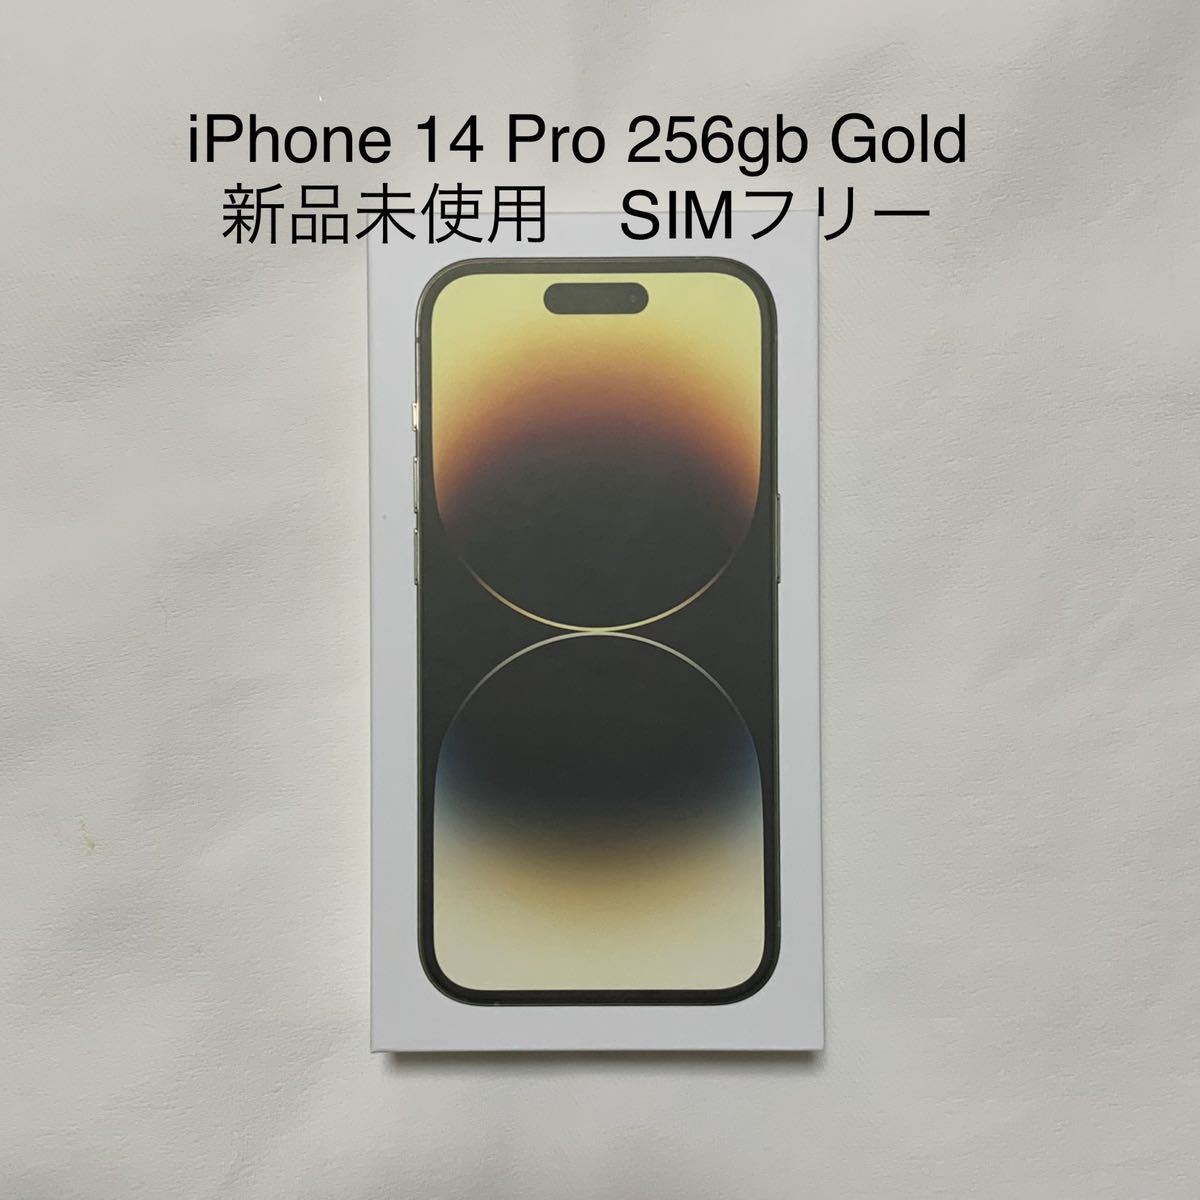 ランキング上位のプレゼント 【新品未使用】iPhone 14 Pro 256GB Gold